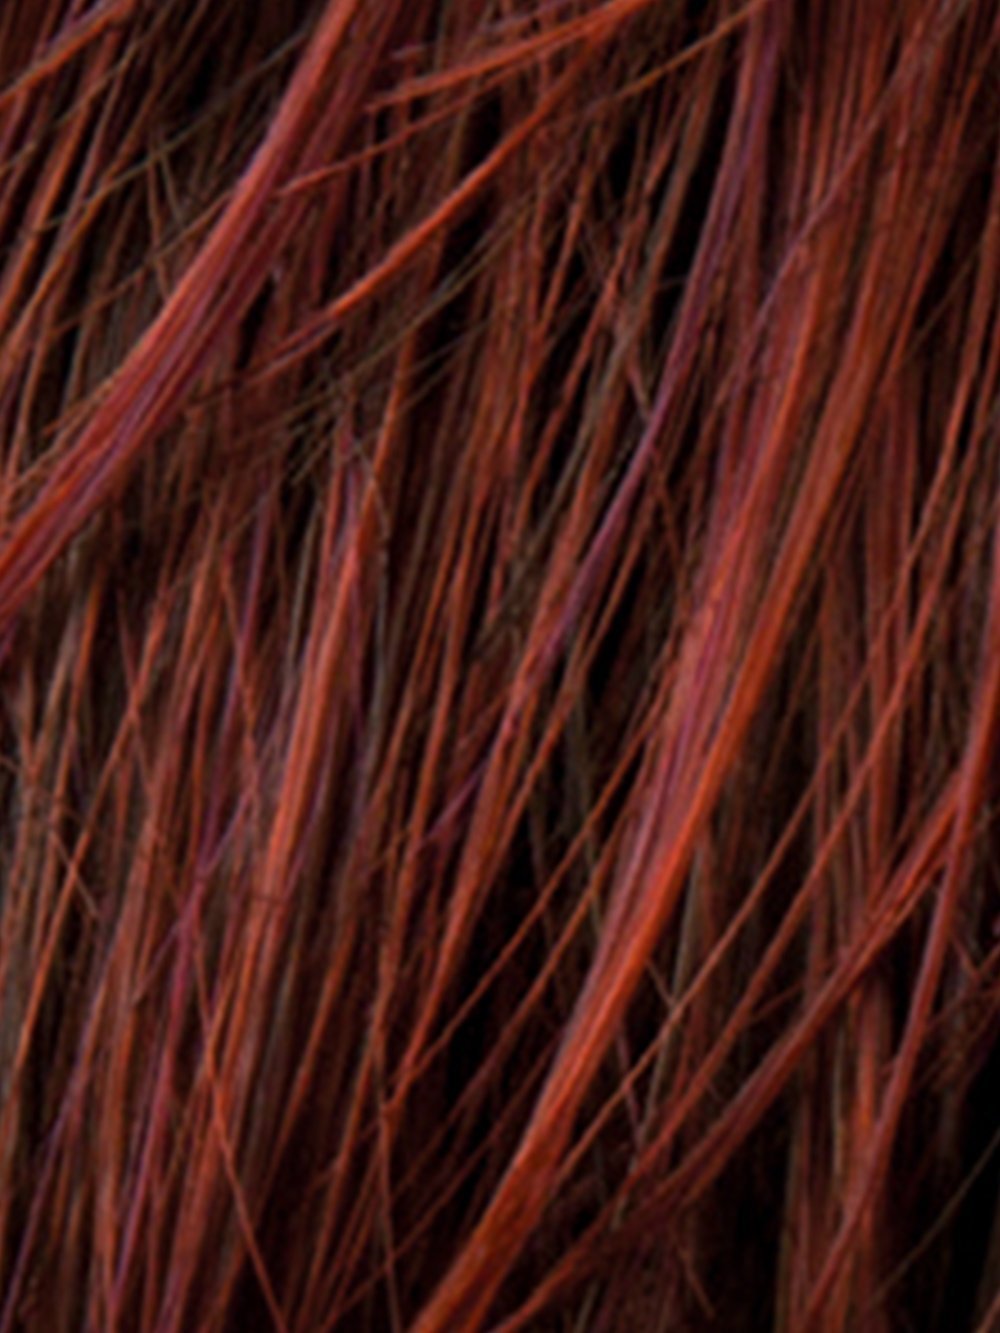 HOT CHILI MIX | Dark Copper Red, Dark Auburn, and Darkest Brown blend